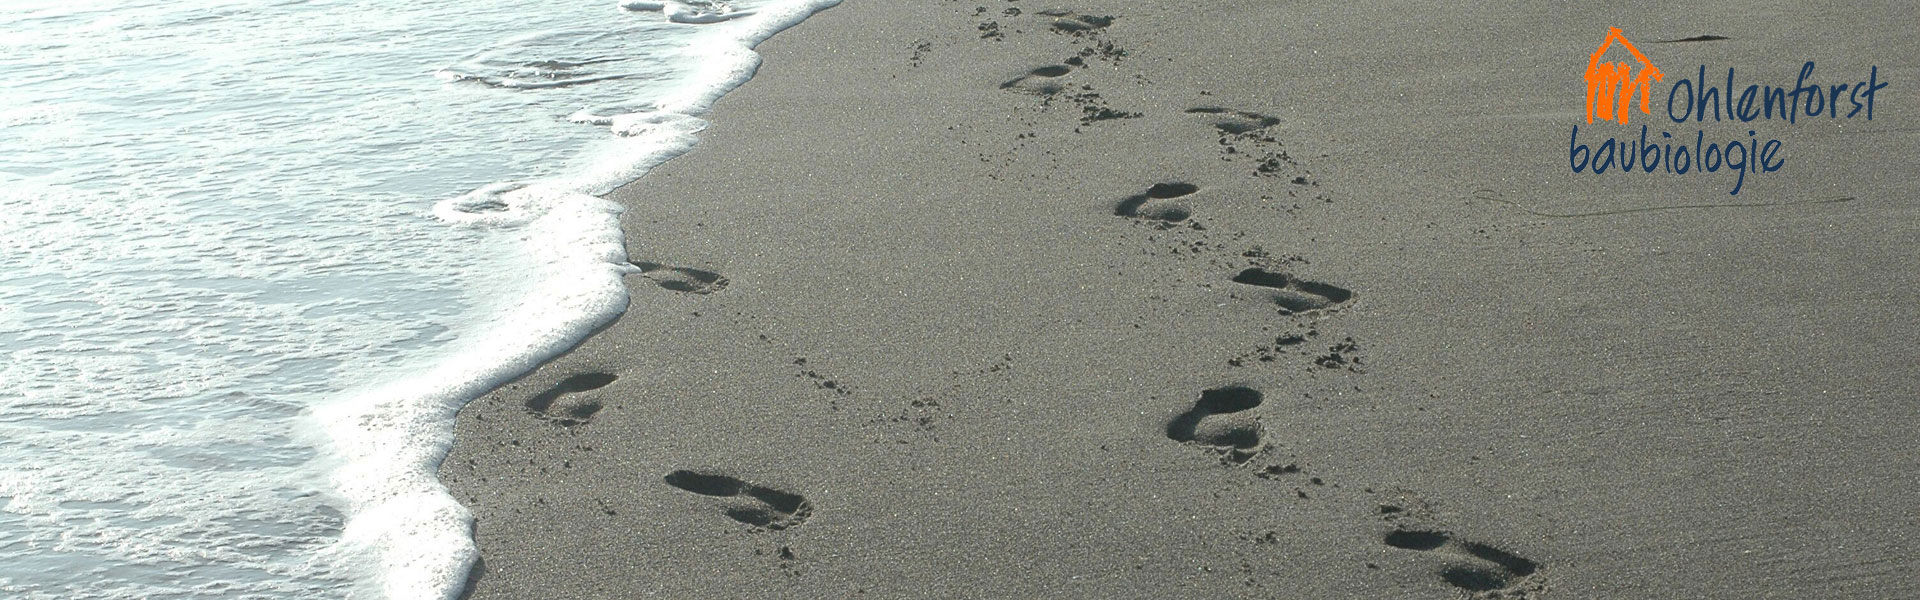 Fußspuren im Sand werden durch auslaufenden Meereswellen zum Verschwinden gebracht - natürlicher Schutz personenbezogener Daten